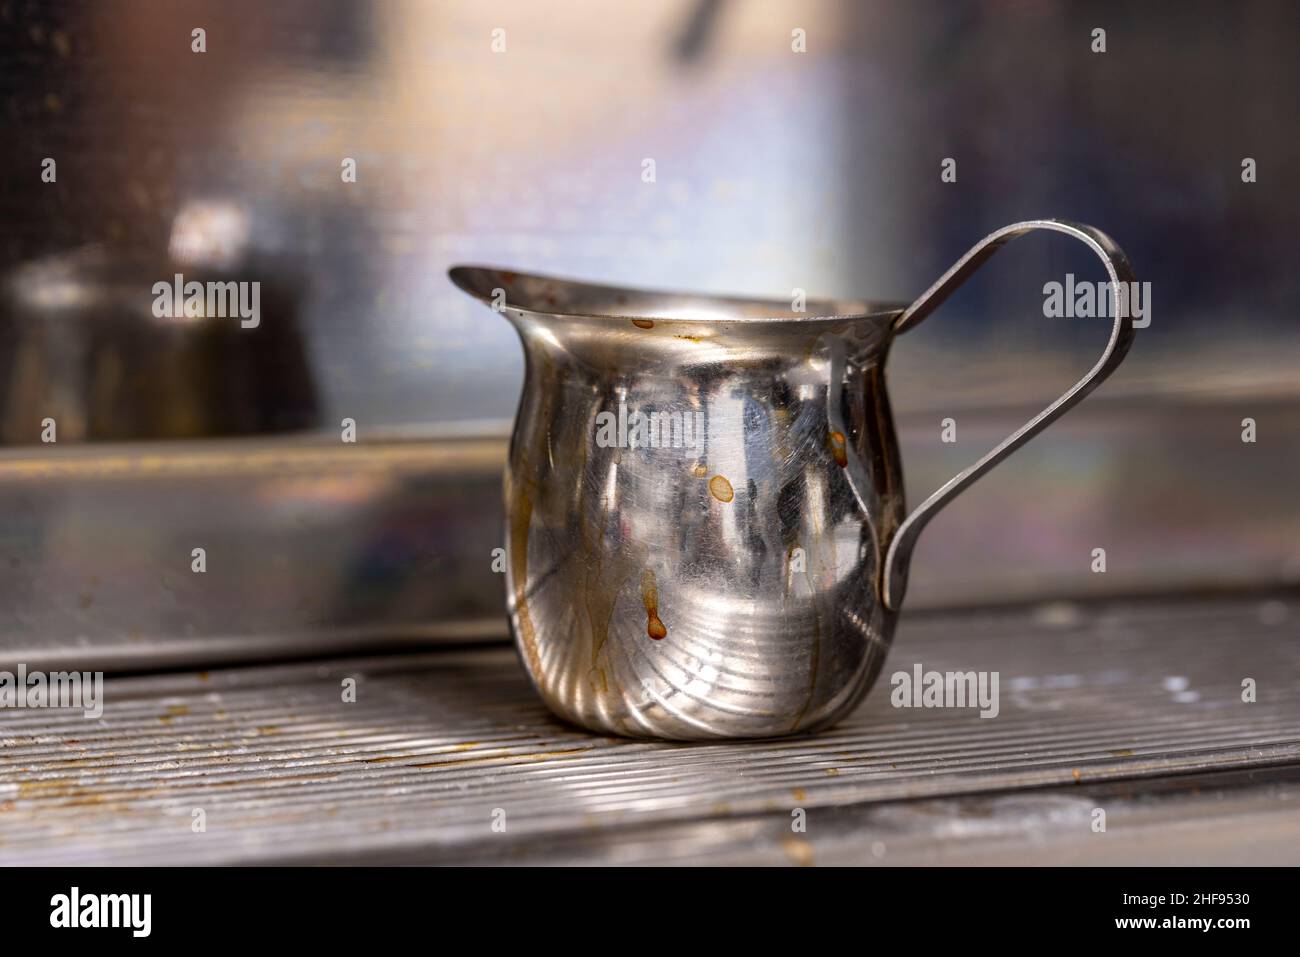 Carafe en acier inoxydable utilisée pour préparer des boissons expresso dans un café Banque D'Images